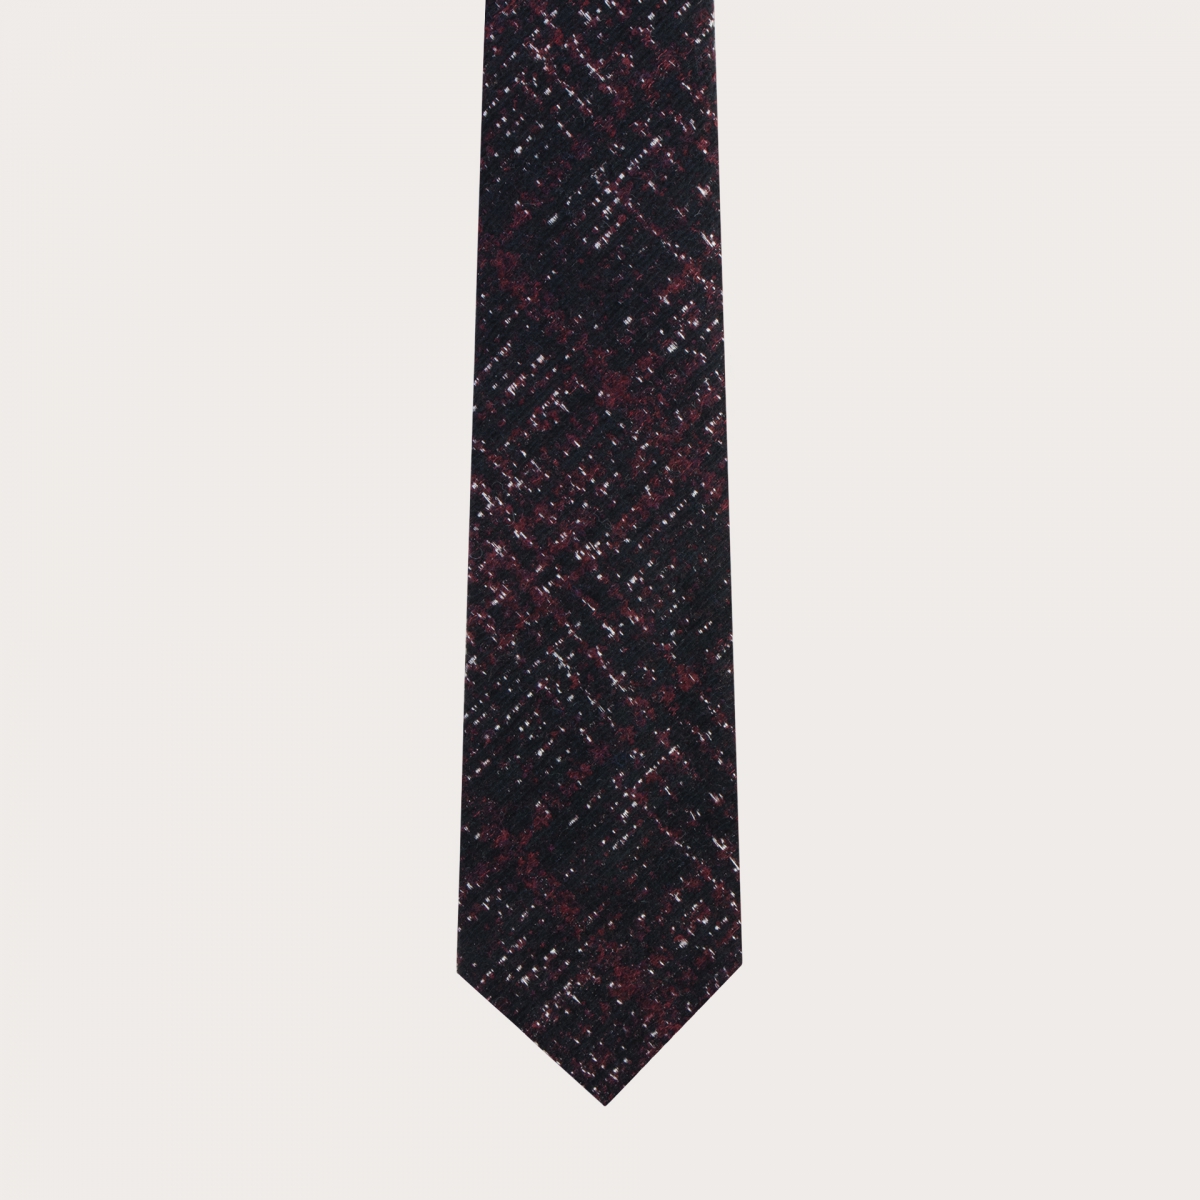 Cravate sans doublurerouge et noire en soie laine check tartans